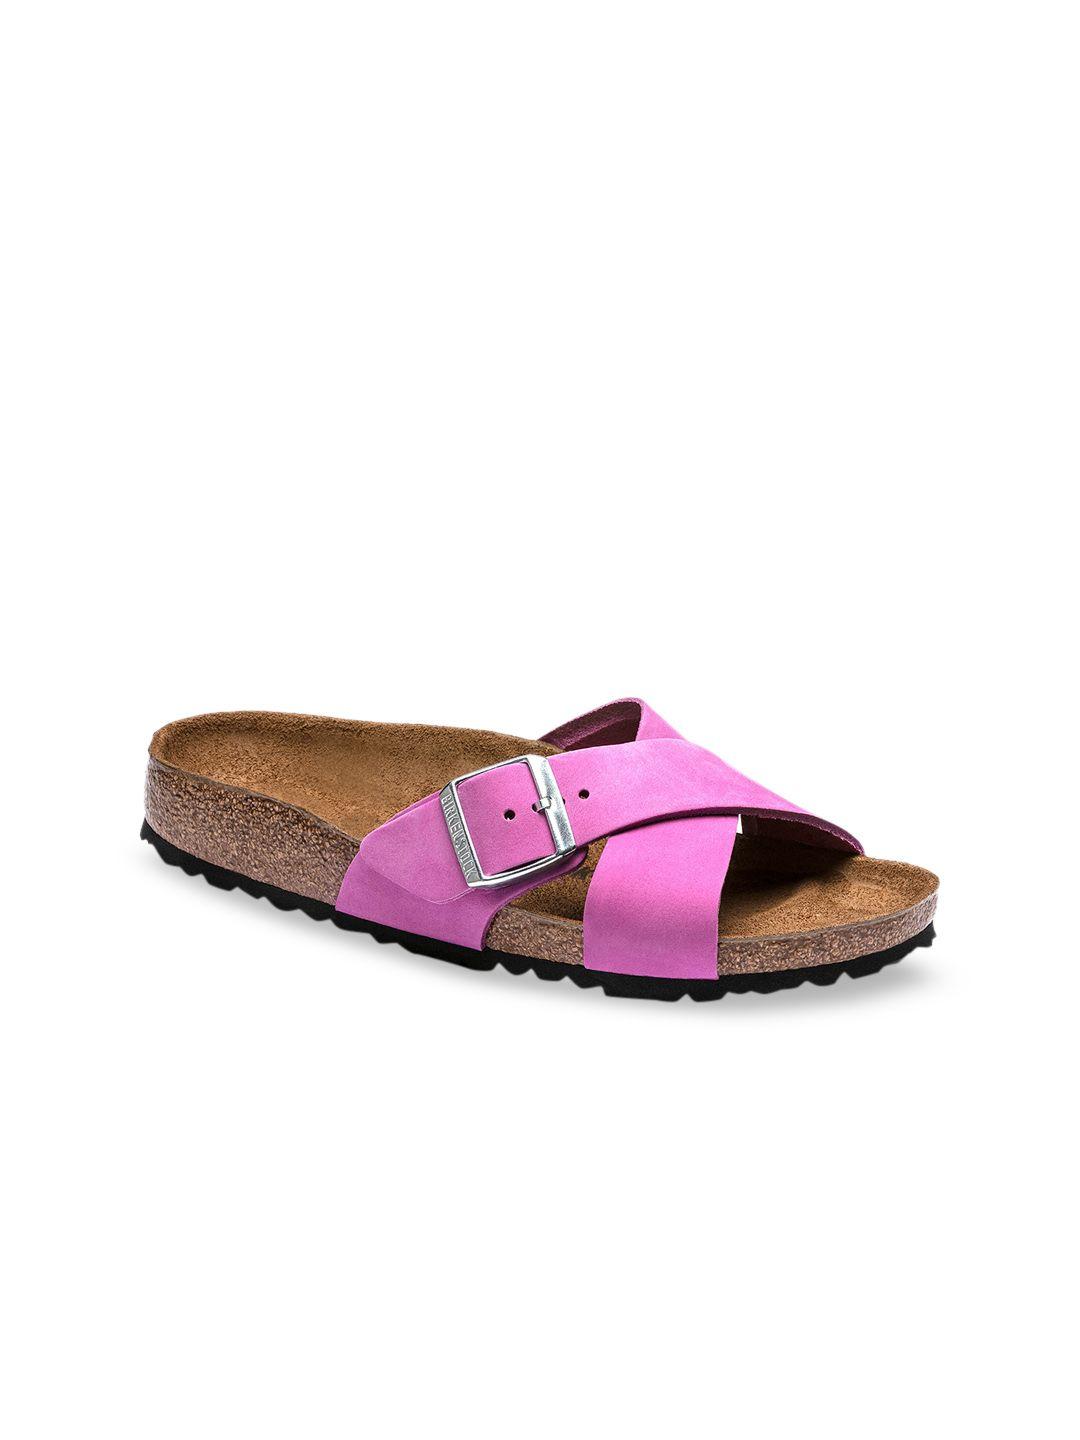 birkenstock women pink leather narrow width siena open toe flats